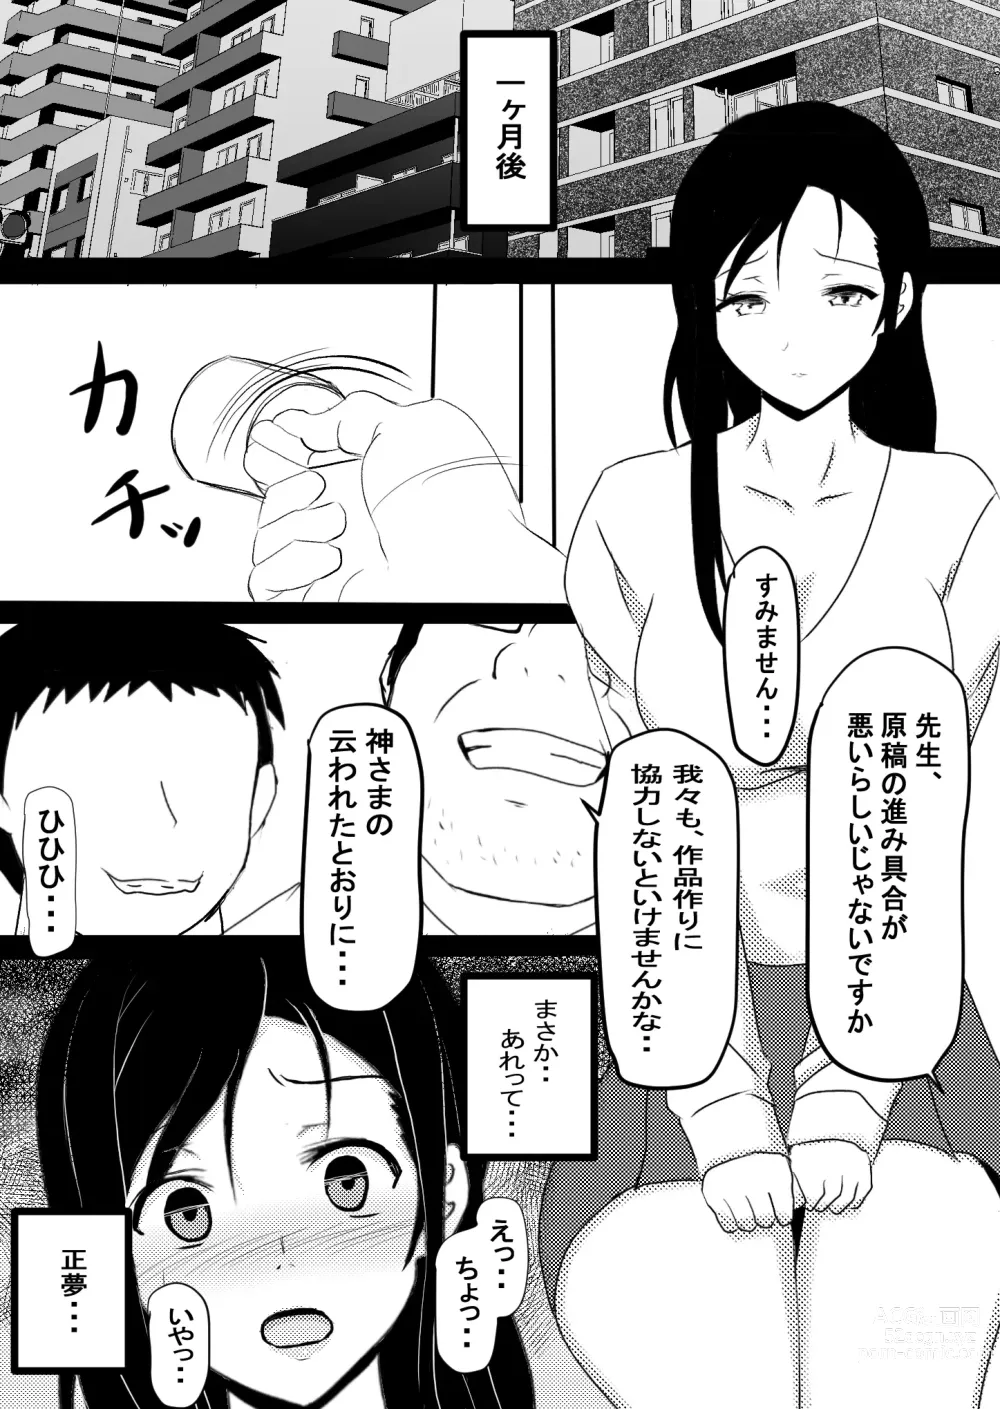 Page 45 of doujinshi Onna Ero Mangaka Tachibana Kyouko wa Yume o Miru